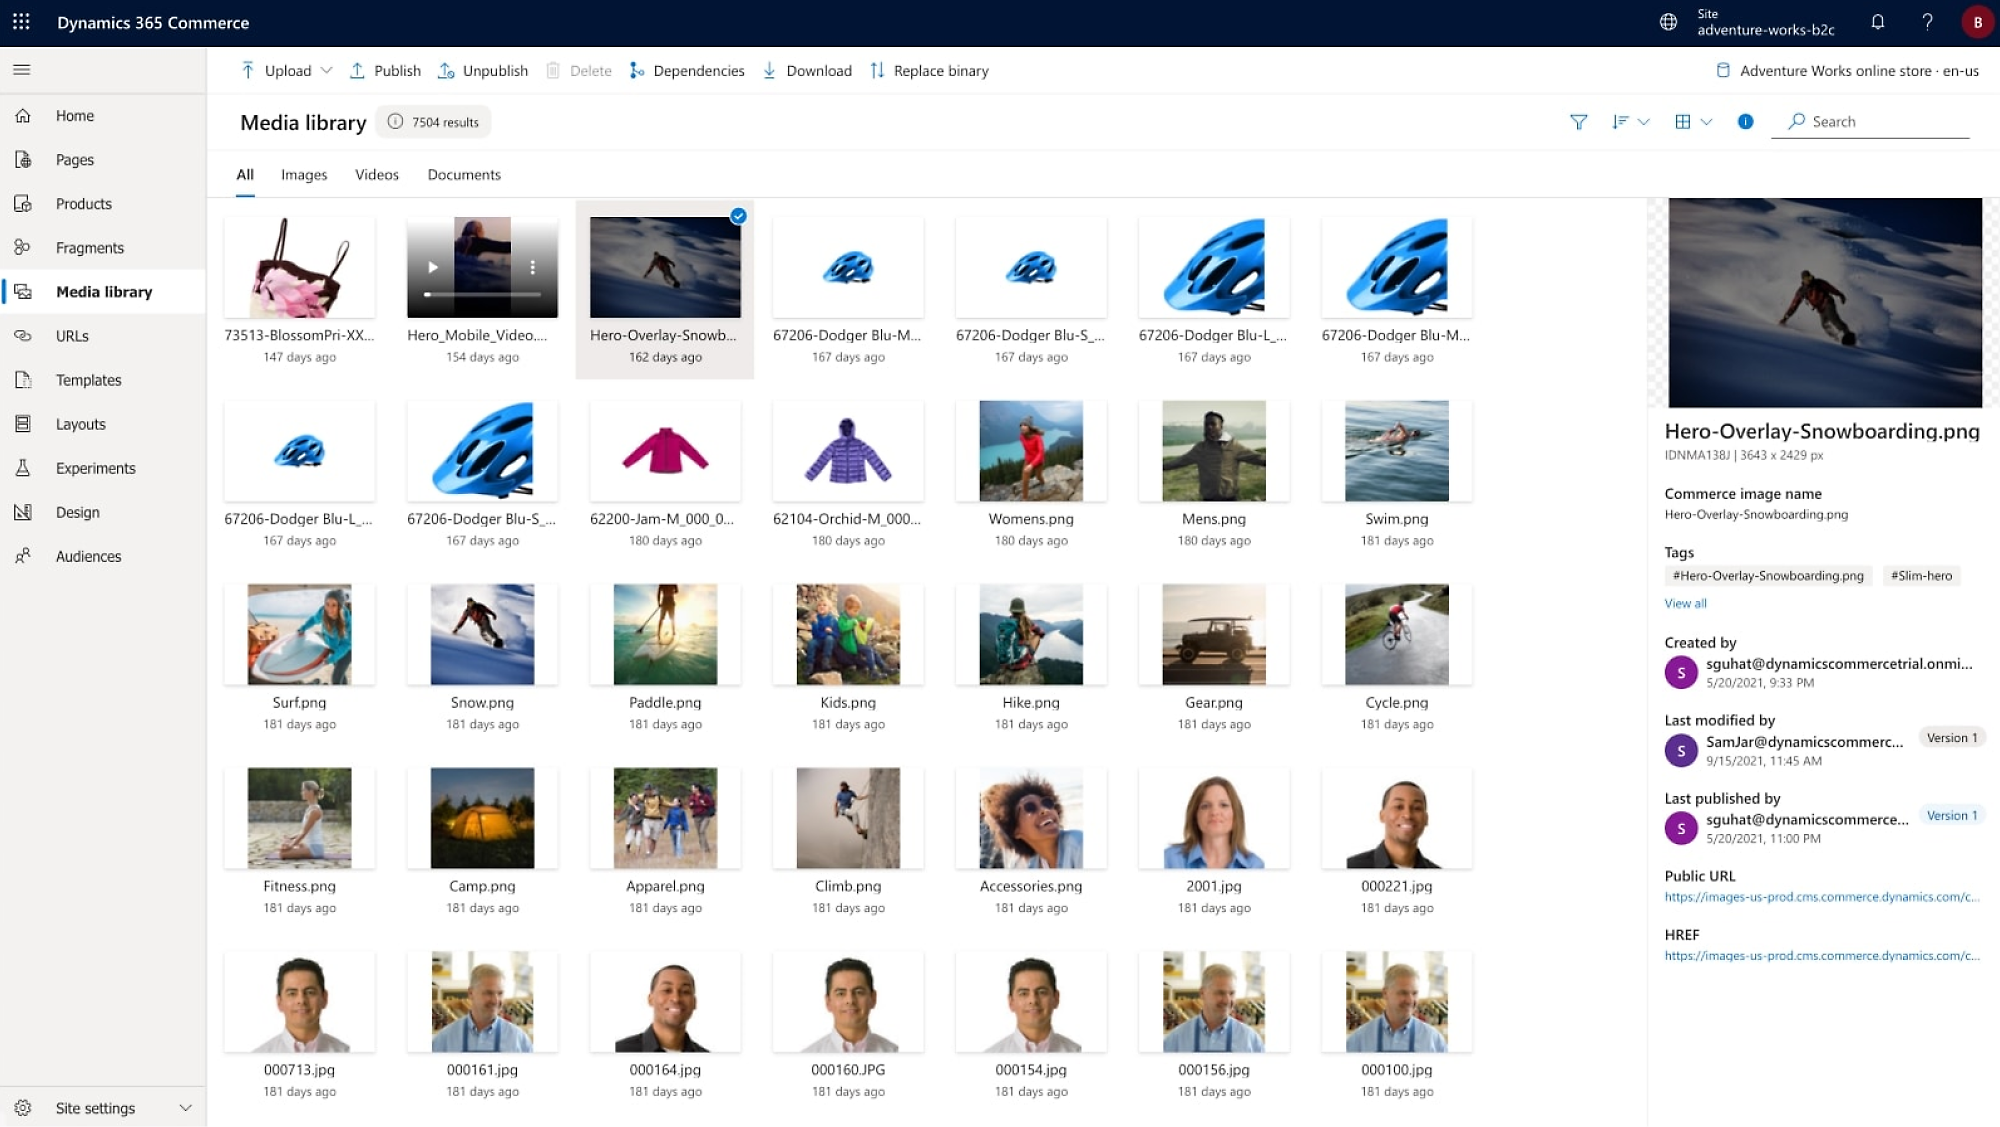 Captura de tela da interface do Dynamics 365 Commerce com várias opções e arquivos de mídia listados.